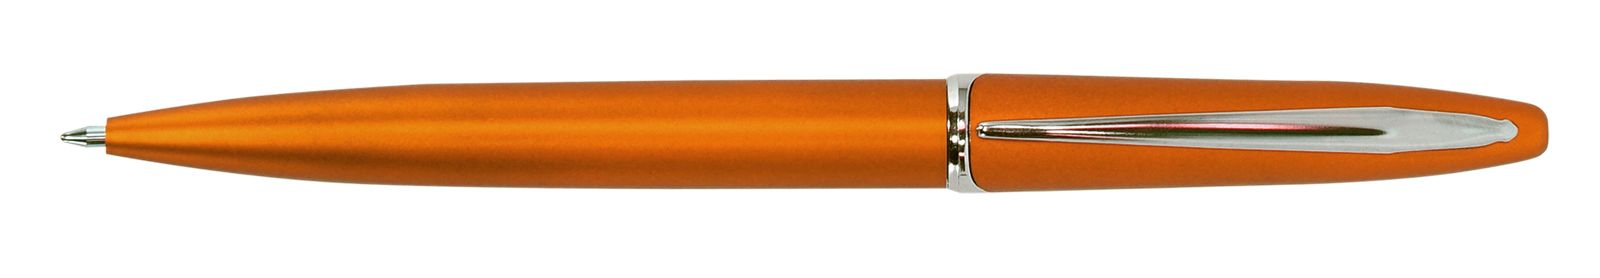 Ручка для логотипа шариковая автоматическая INFORMAT INSPIRATION 0,7 мм, синяя, оранжевый корпус